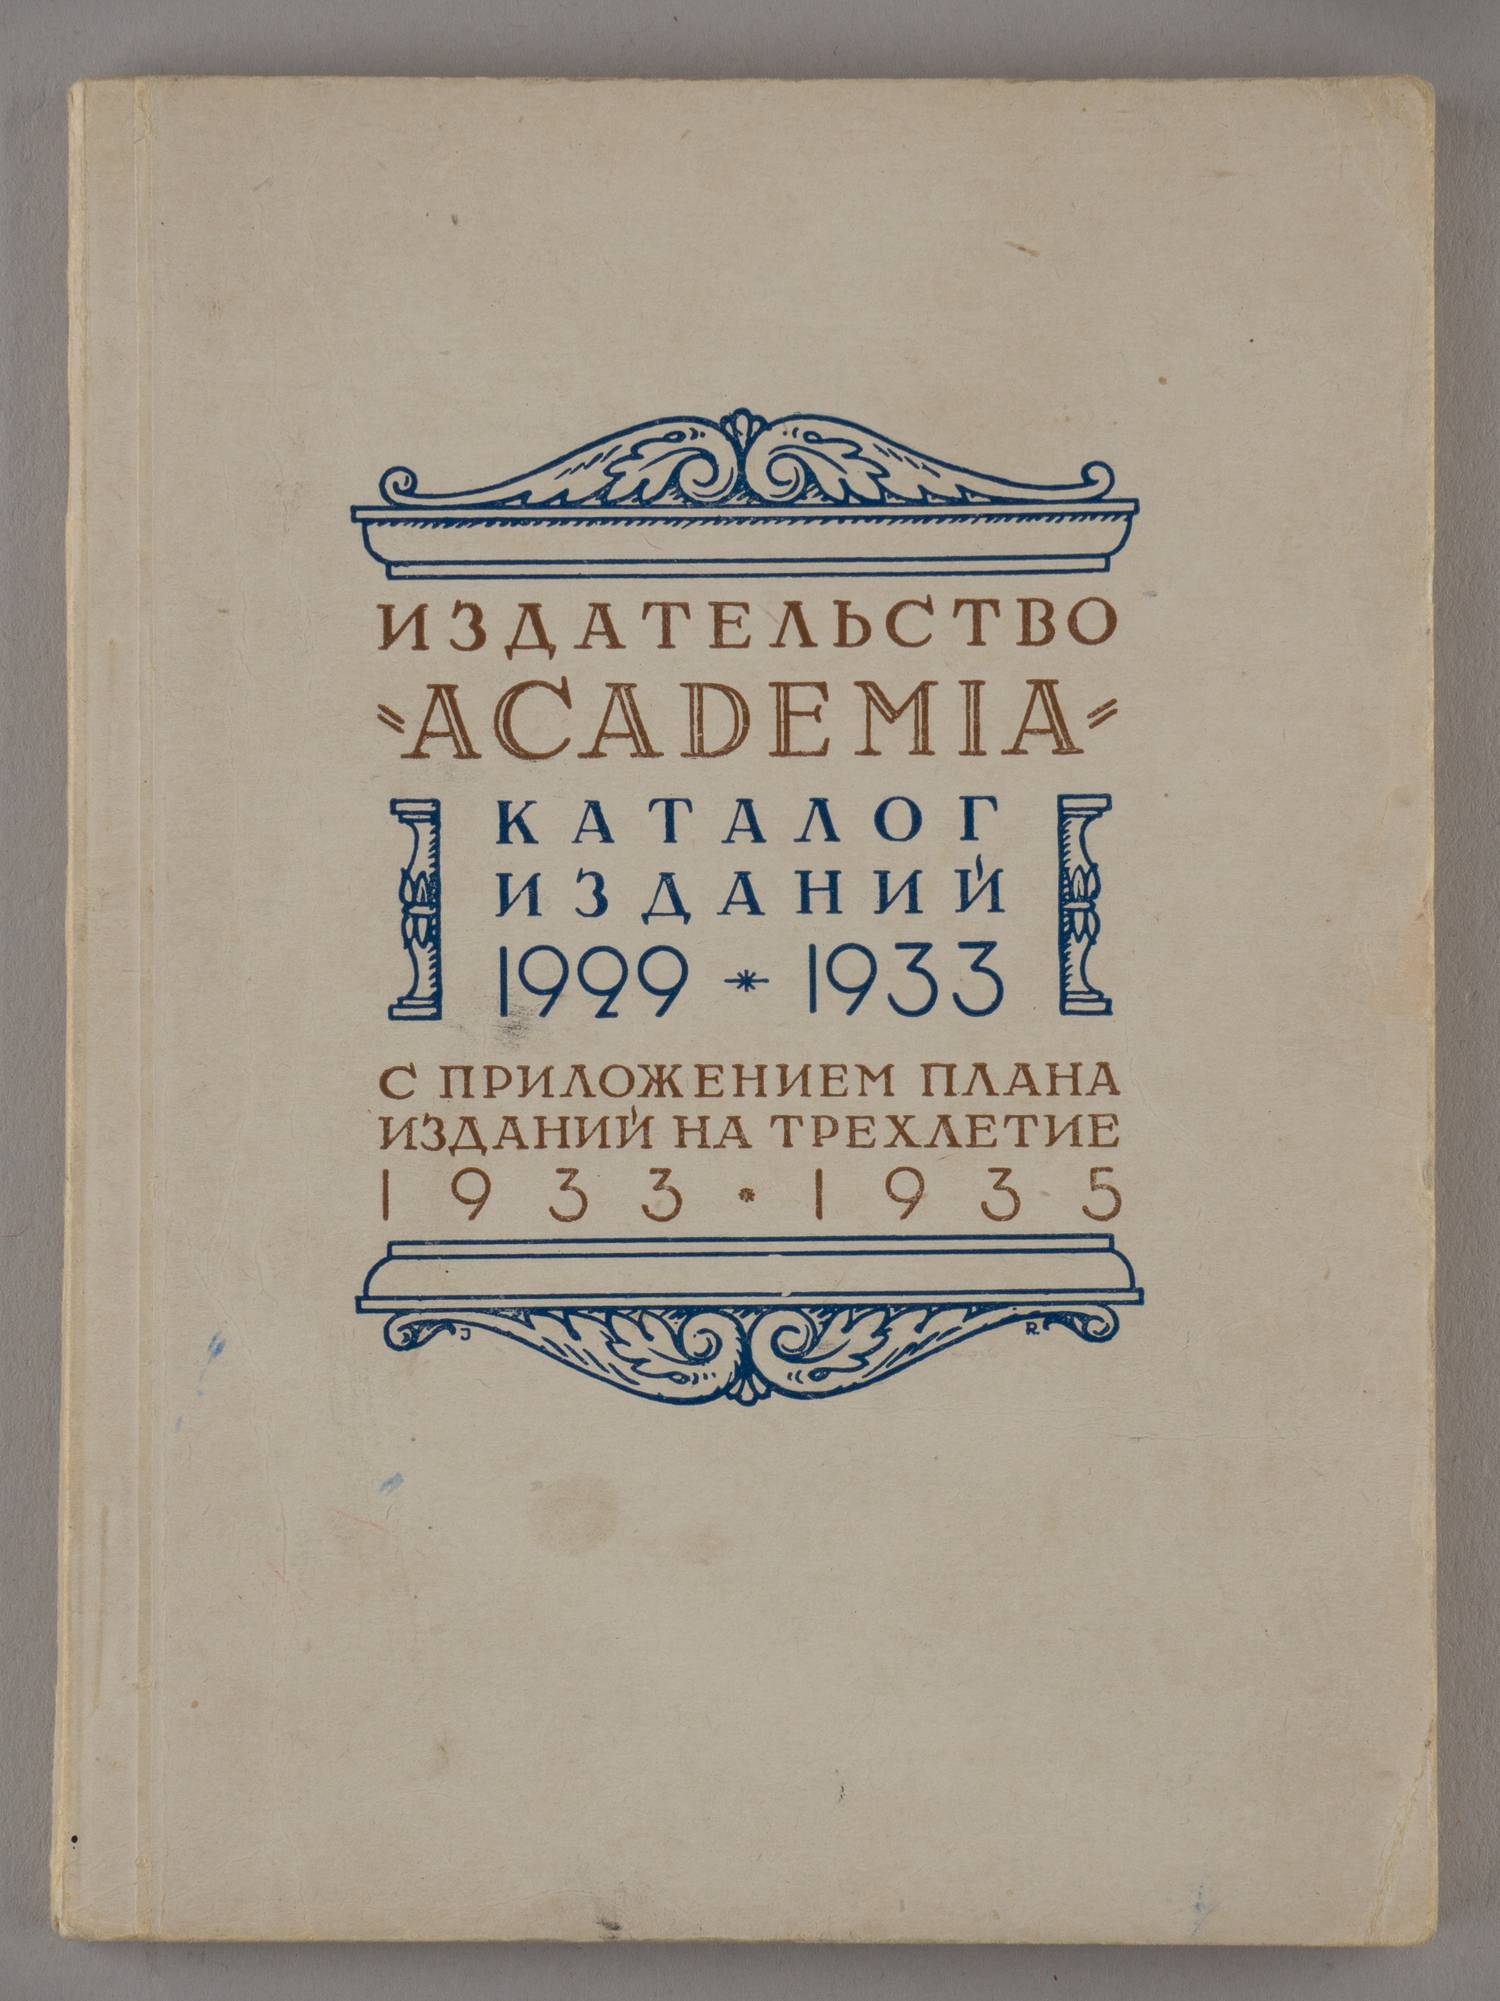 Издательство «Academia». Каталог изданий 1929 - 1933 с приложением плана изданий на трёхлетие 1933 - 1935 (М.-Л., 1932).